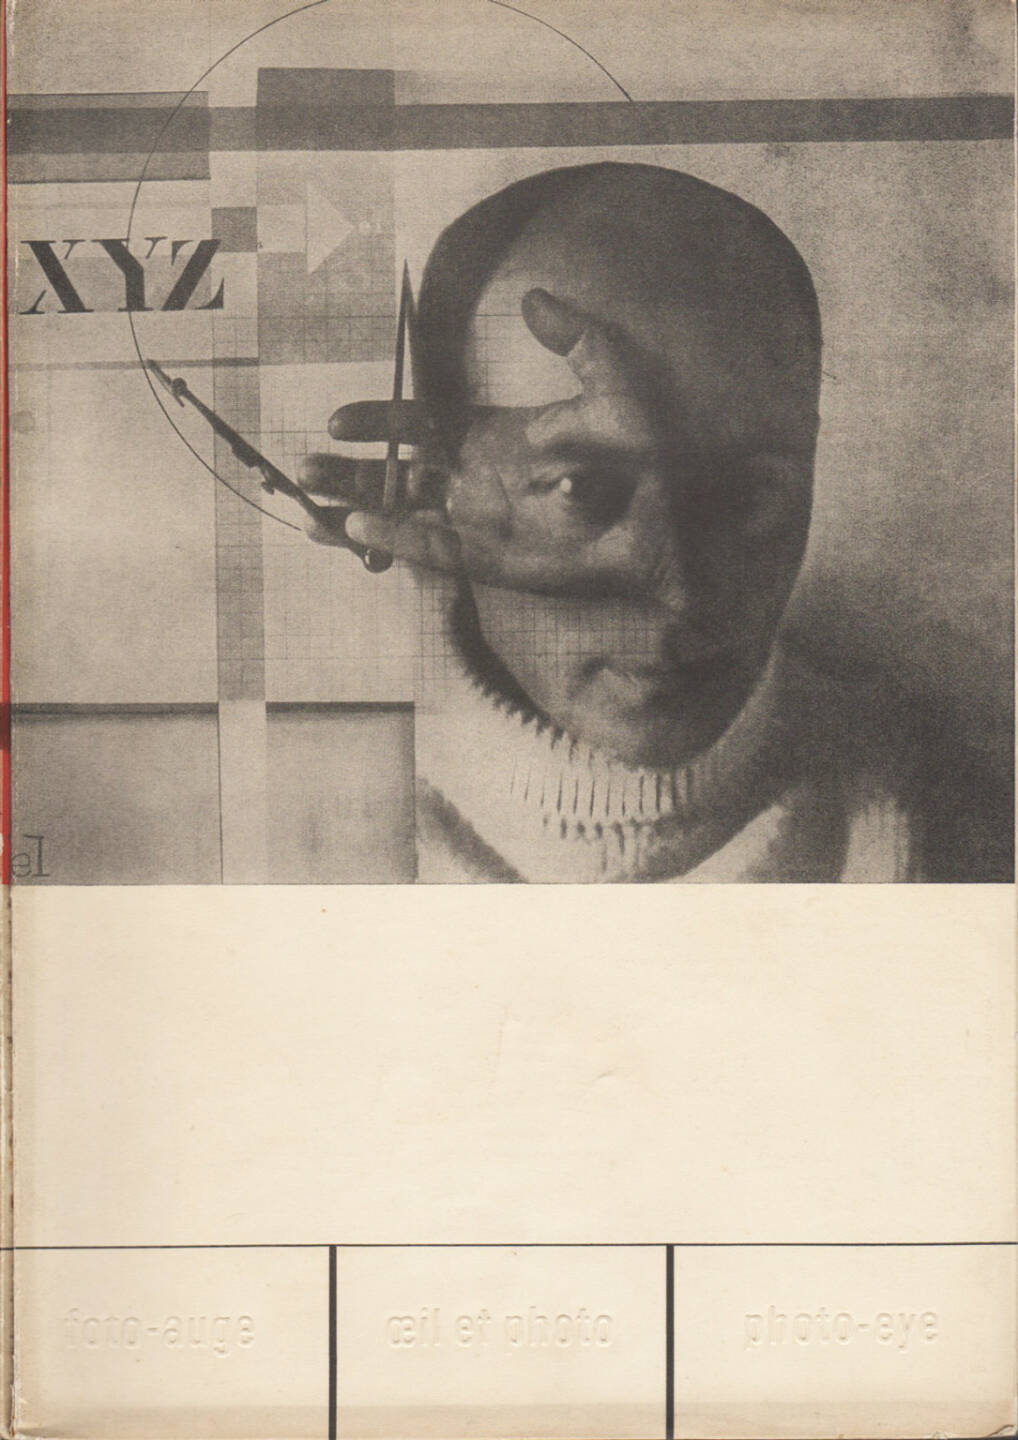 Franz Roh & Jan Tschichold - Foto-Auge, Oeil et Photo, Photo-Eye, Akademischer Verlag Dr. Fritz Wedekind & Co 1929, Cover - http://josefchladek.com/book/franz_roh_-_foto-auge_oeil_et_photo_photo-eye